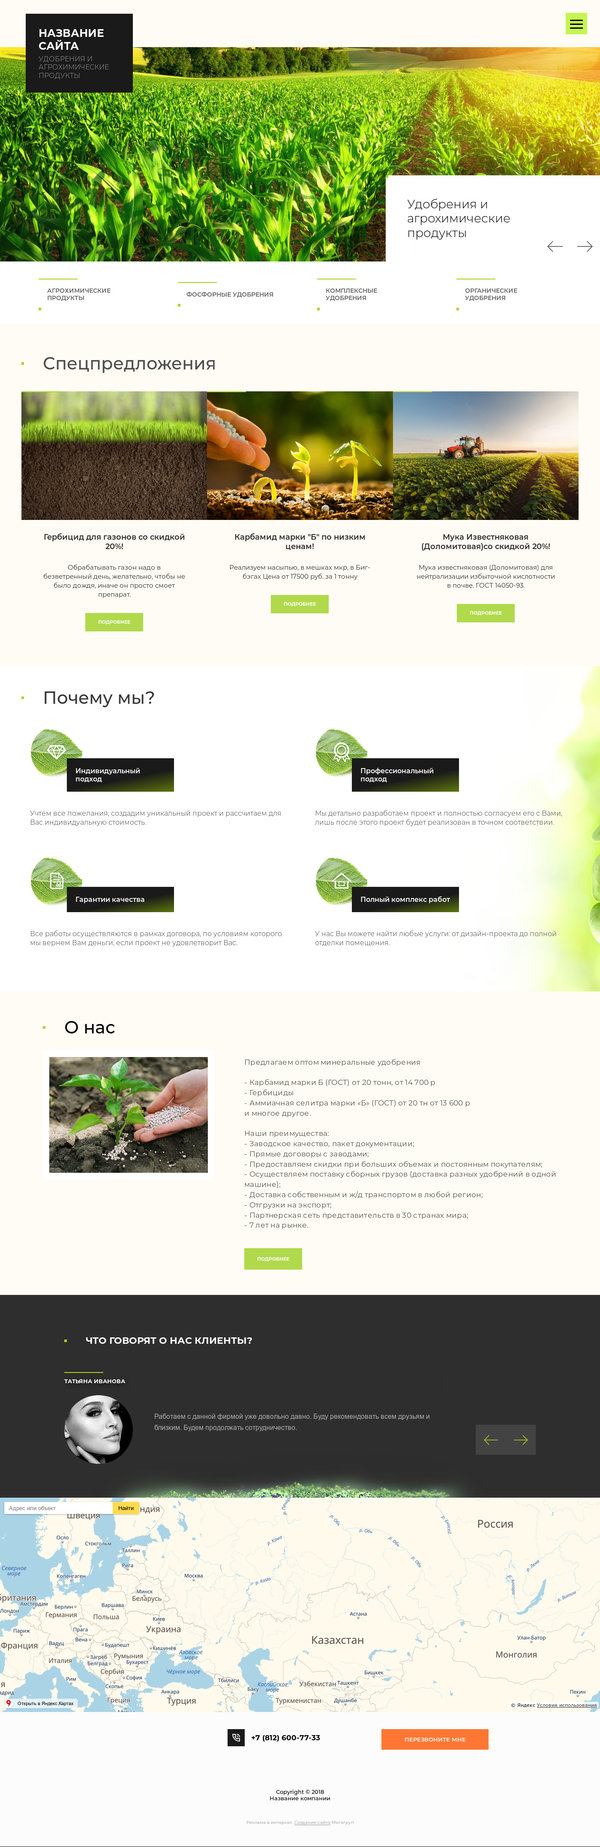 Готовый Сайт-Бизнес № 2002844 - Удобрения и агрохимические продукты (Десктопная версия)